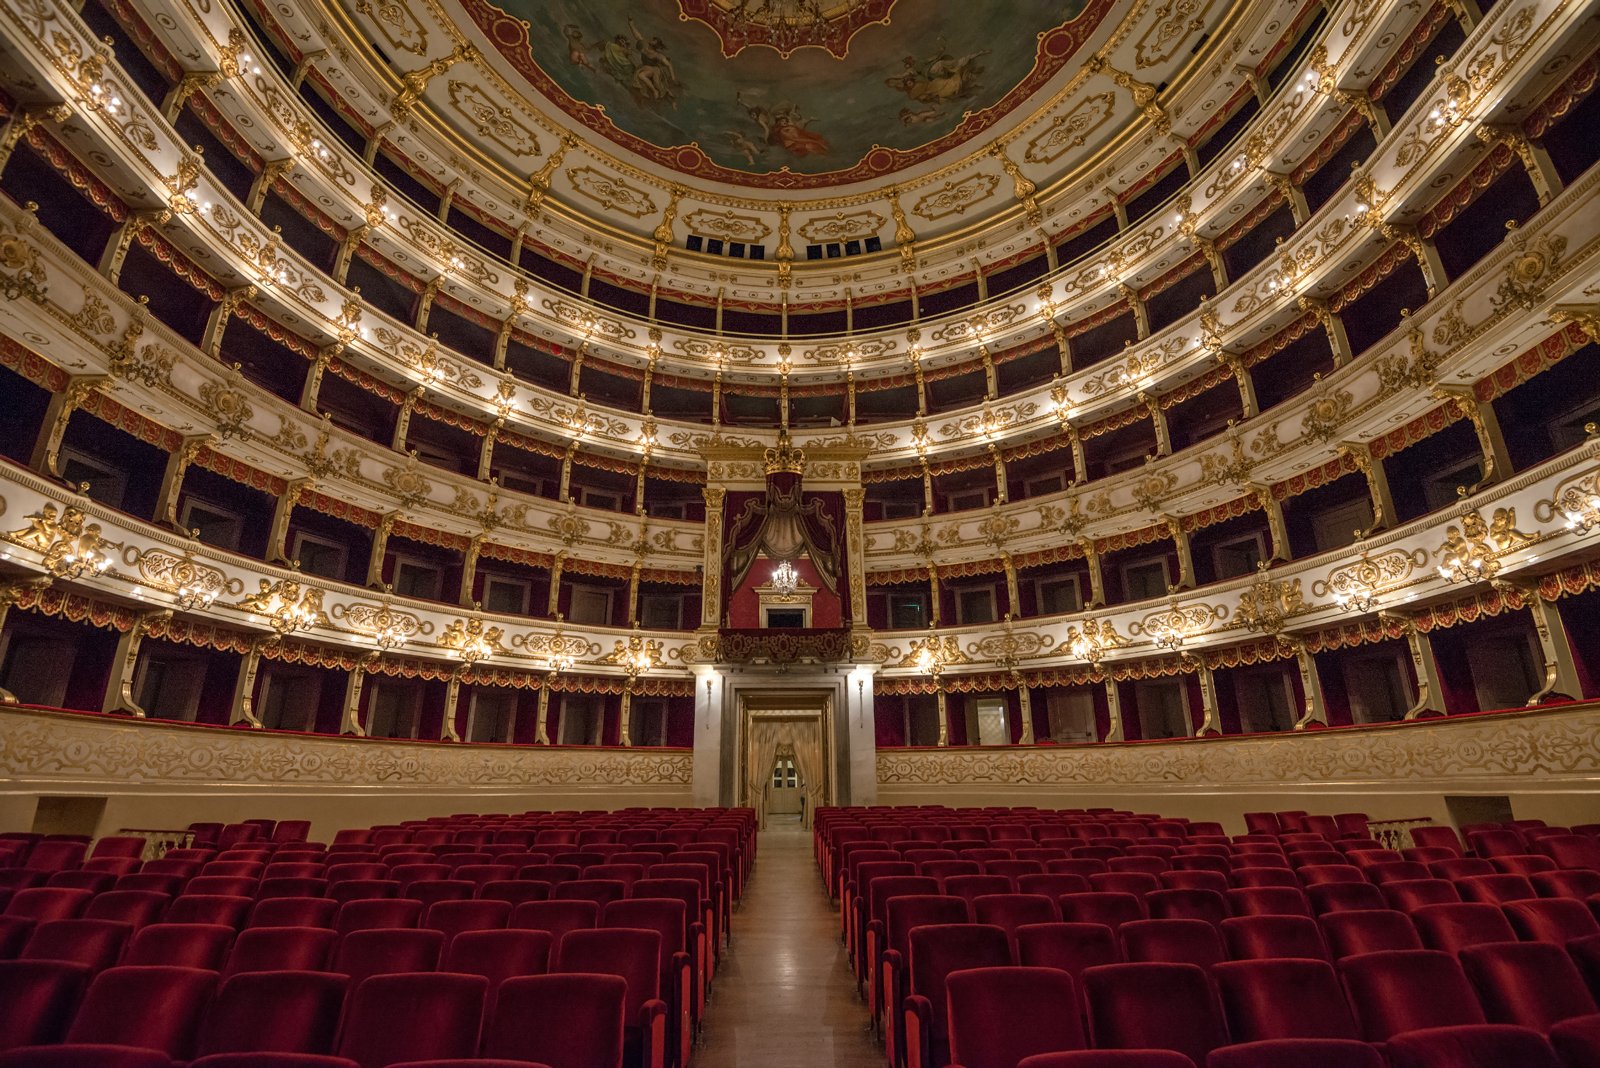 Inside the Teatro Regio, Parma's stately jewel (image: Nicola Mazzocato)